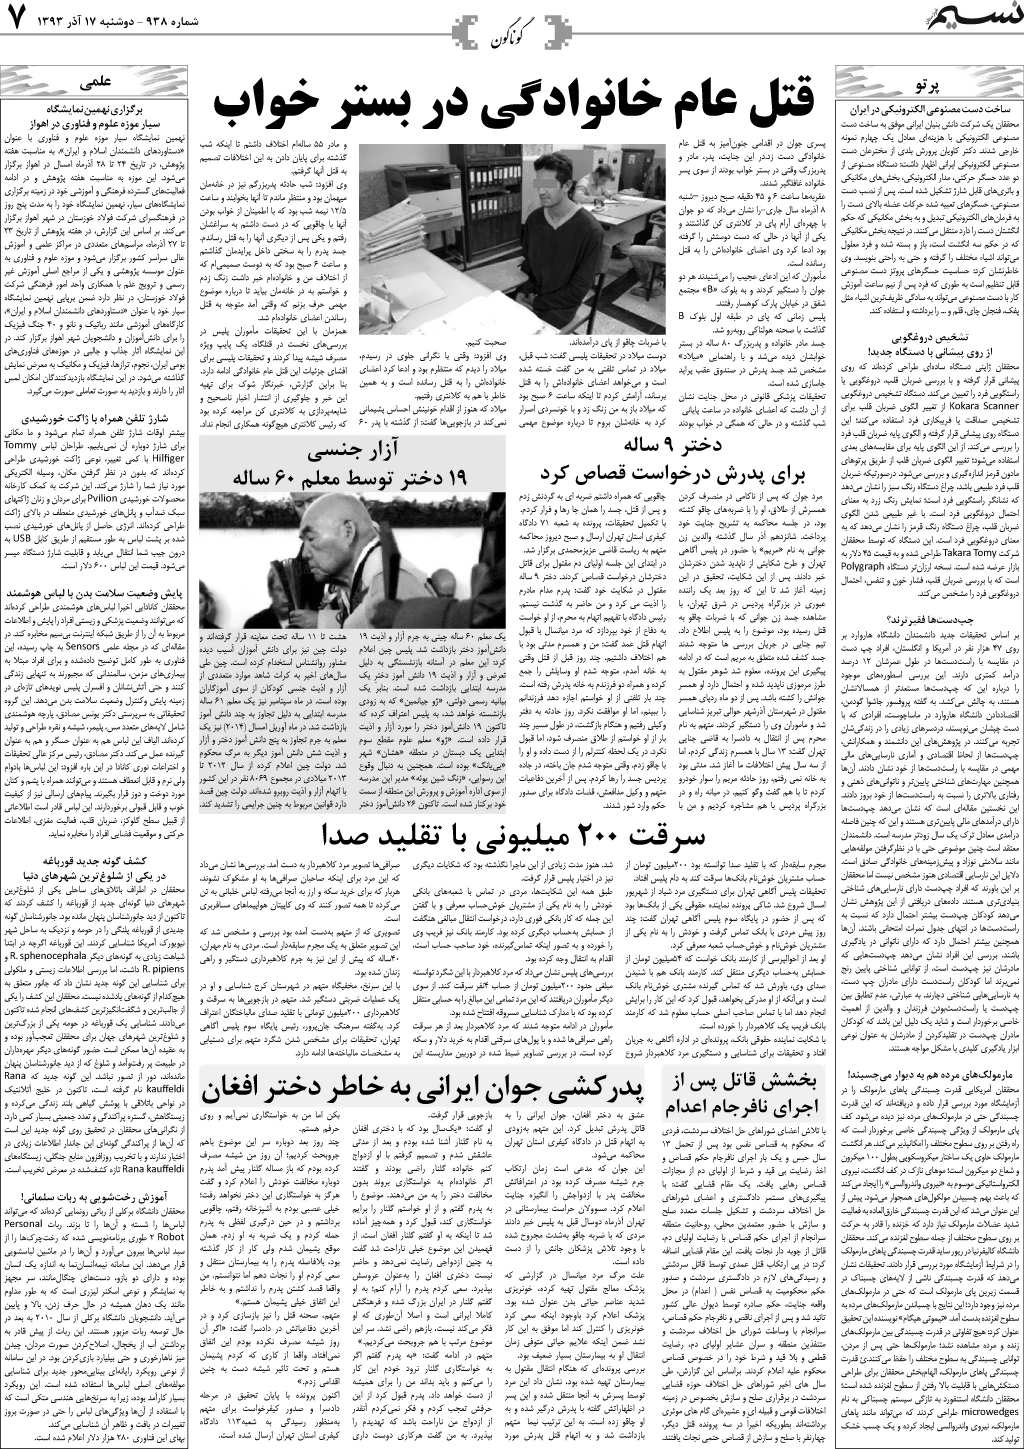 صفحه گوناگون روزنامه نسیم شماره 938